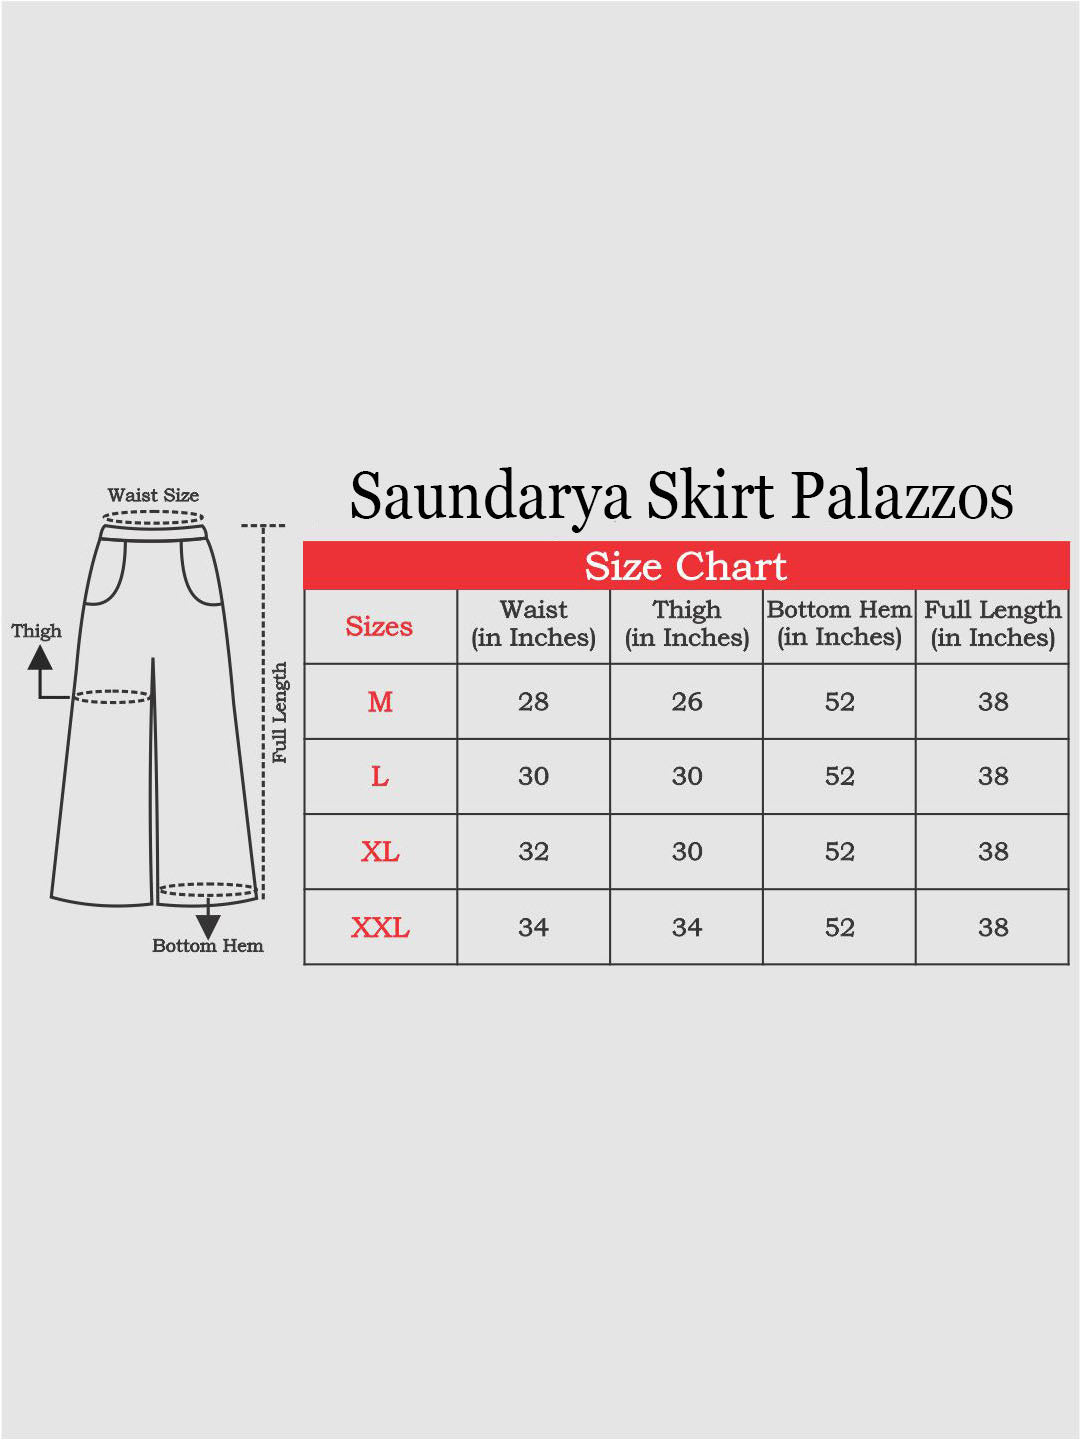 Saundarya Women's Off White Skirt Palazzos